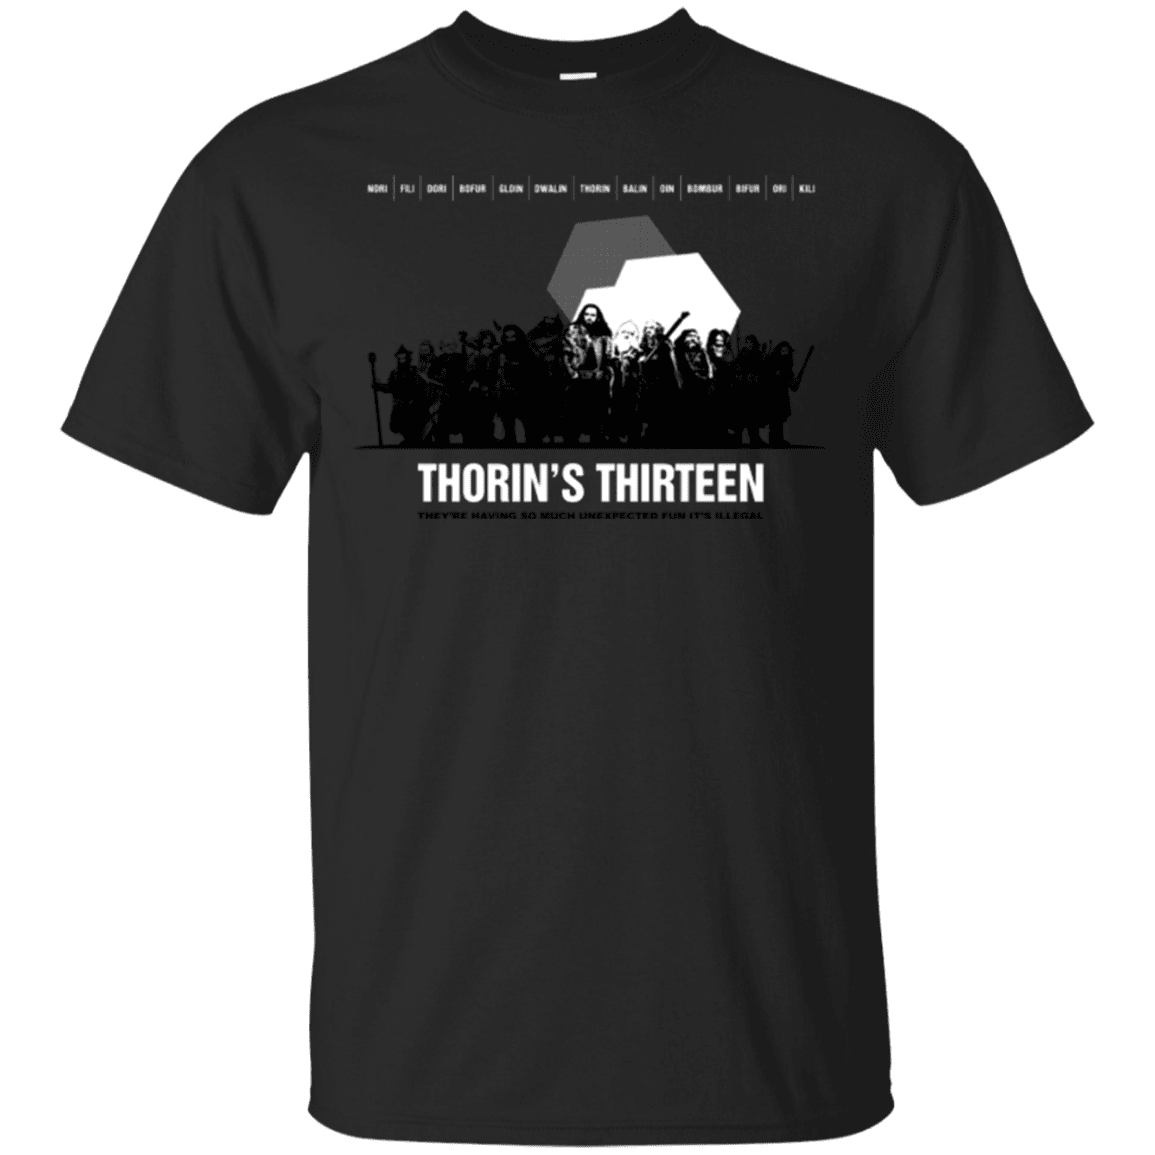 T-Shirts Black / Small Thorin's Thirteen T-Shirt